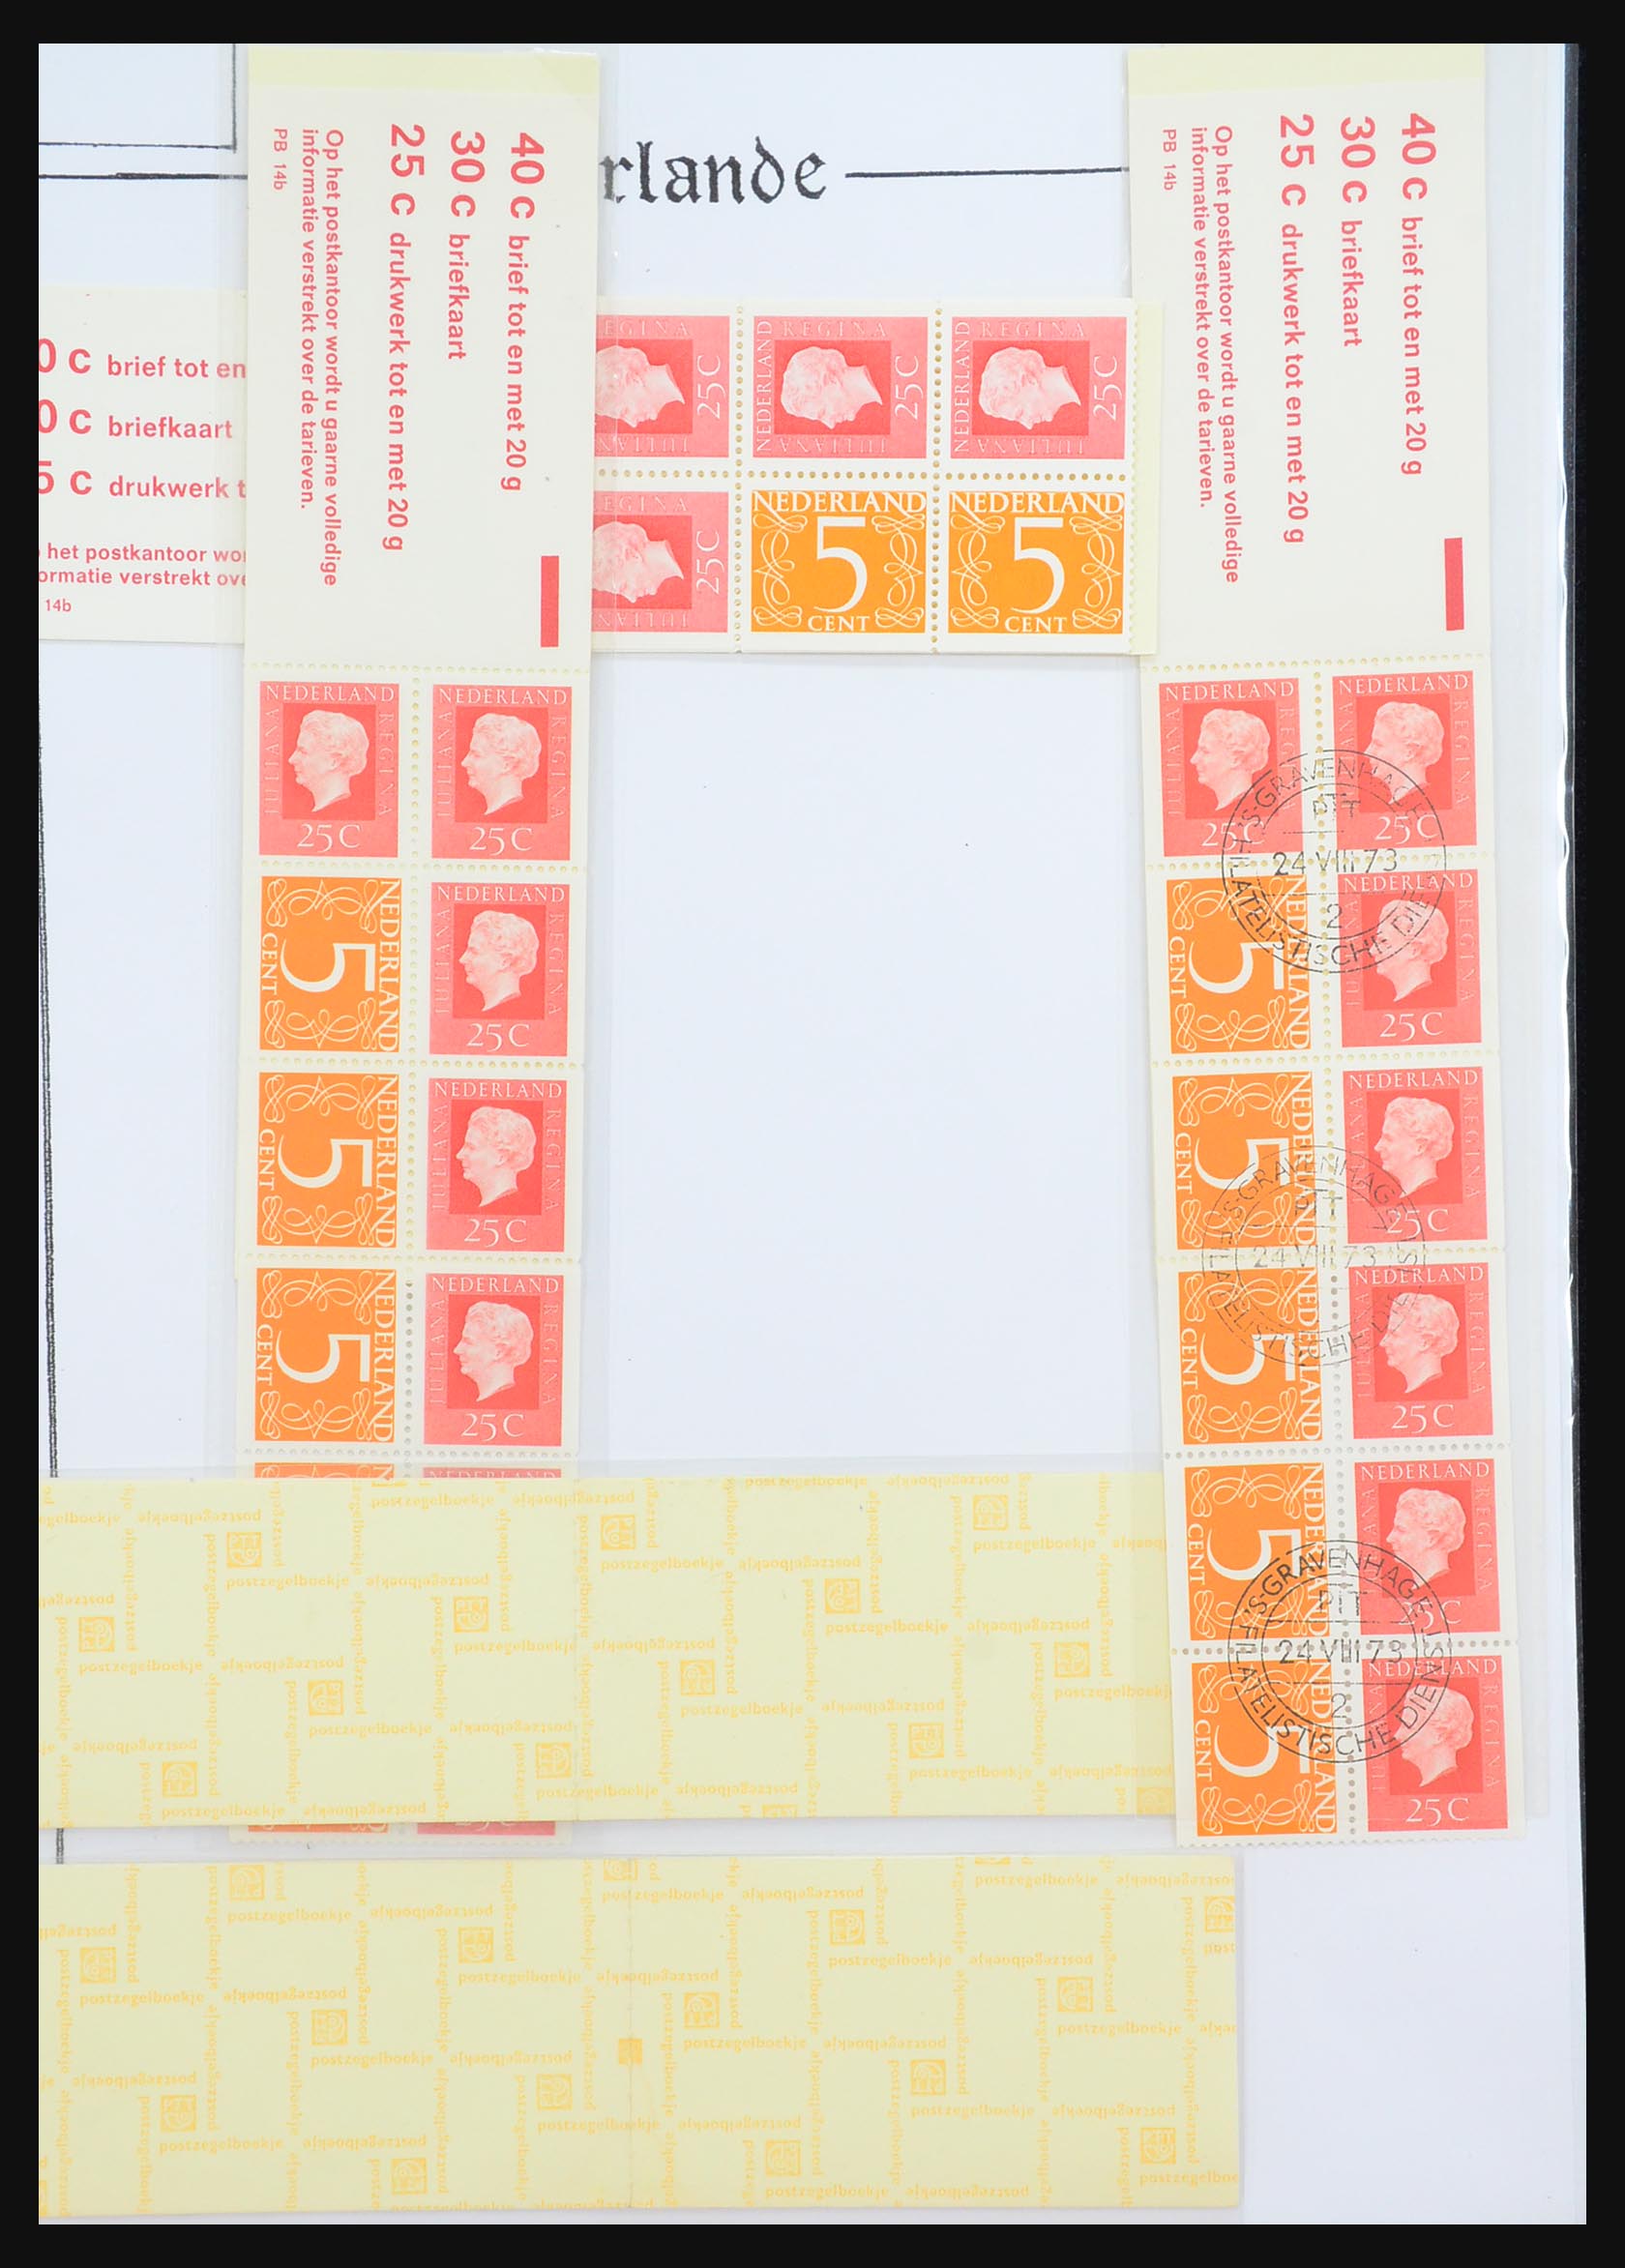 31311 055 - 31311 Netherlands stamp booklets 1964-1994.